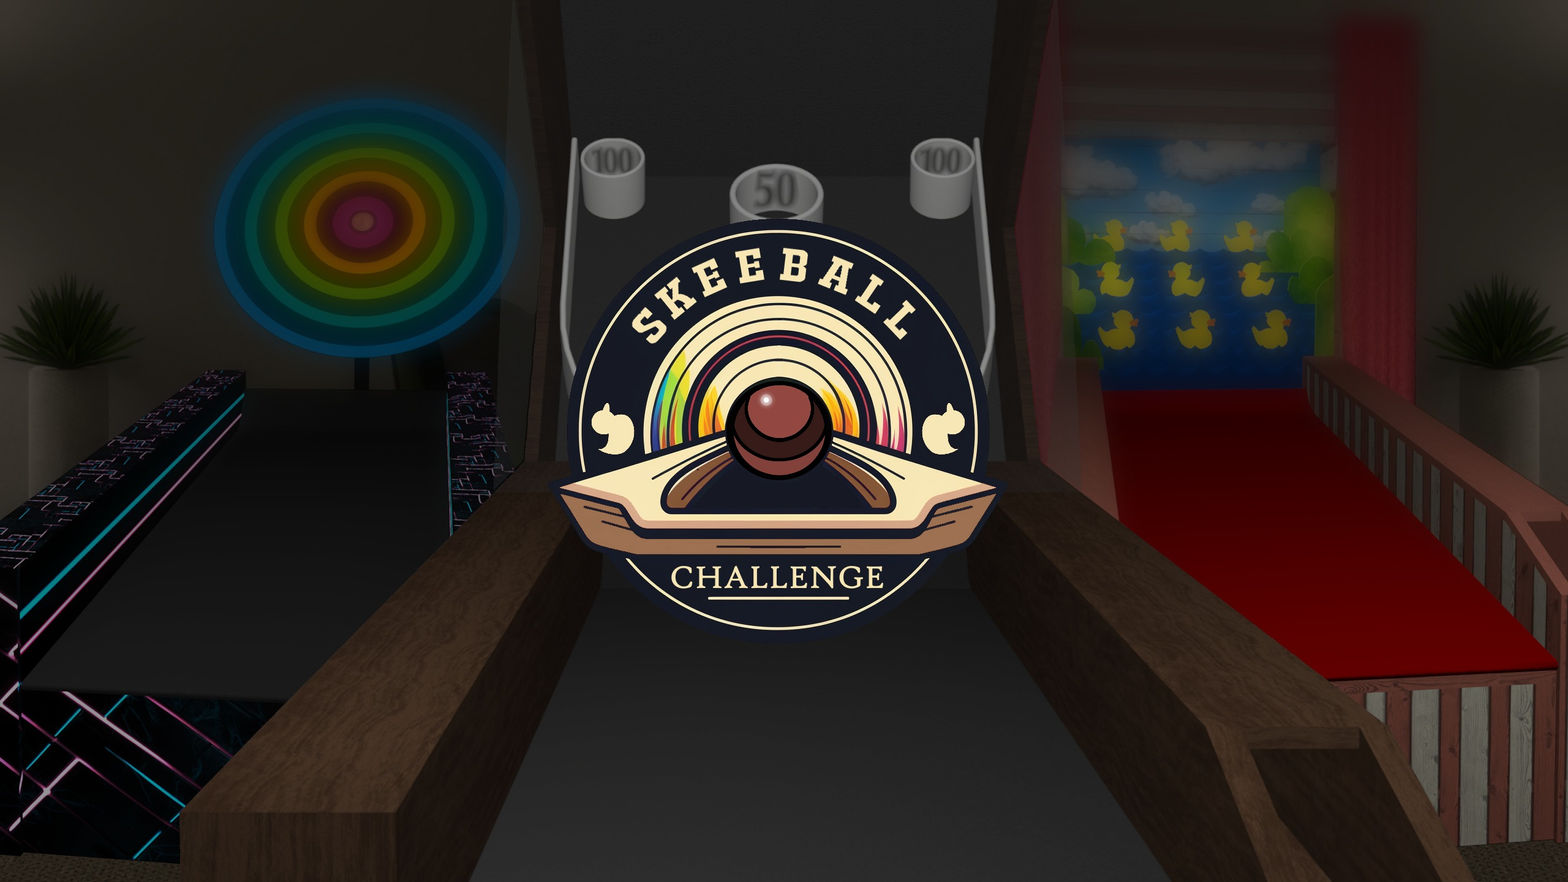 Skeeball Challenge